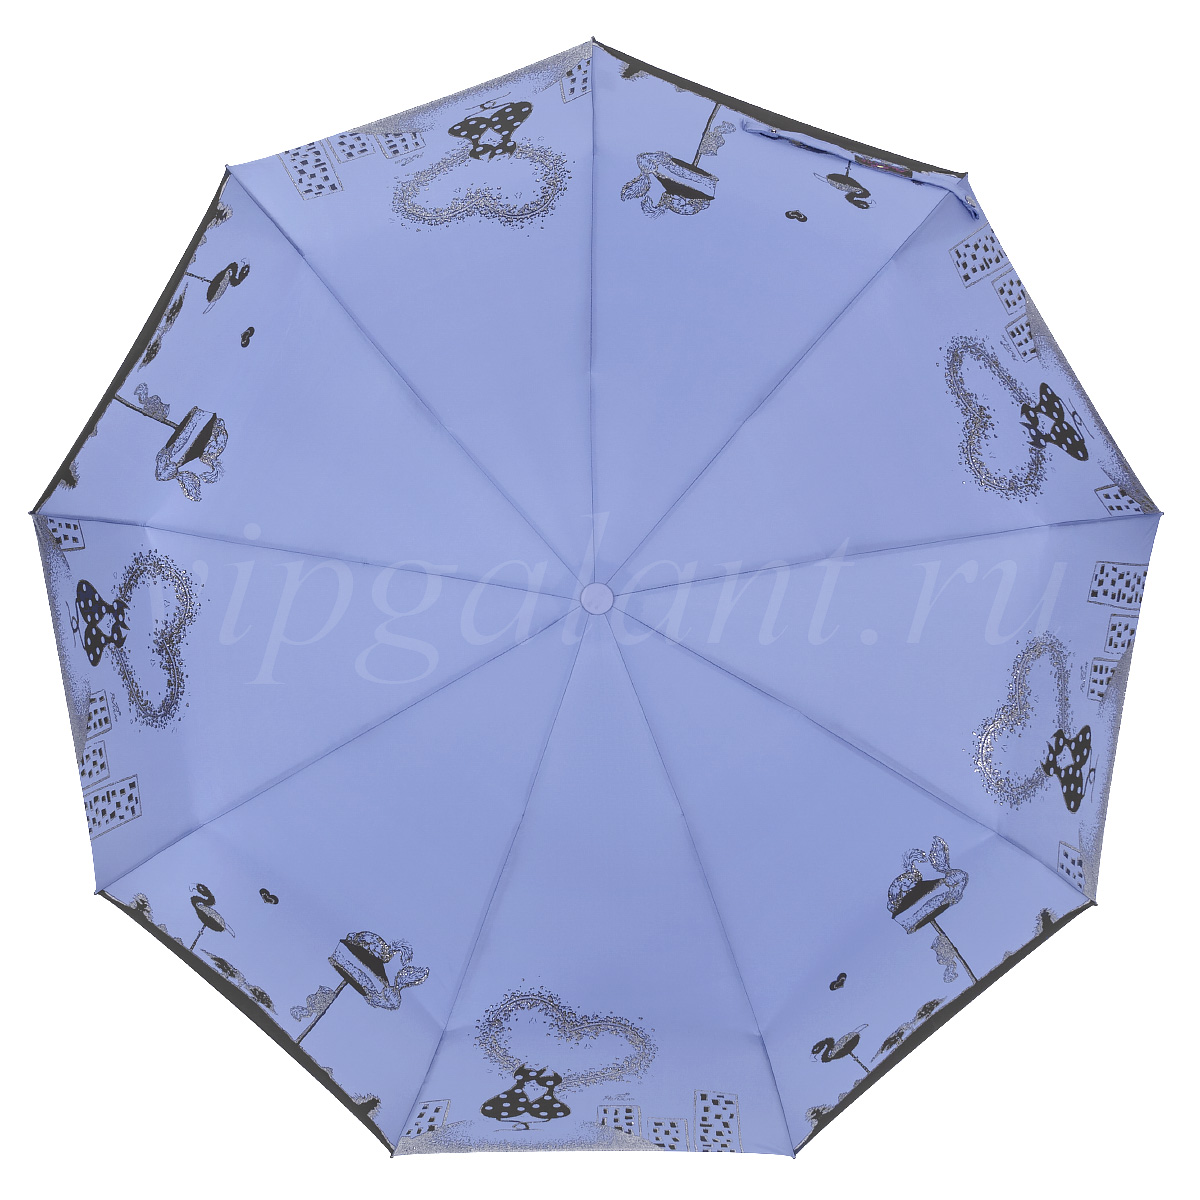 Зонт женский Popular 816 фото 1